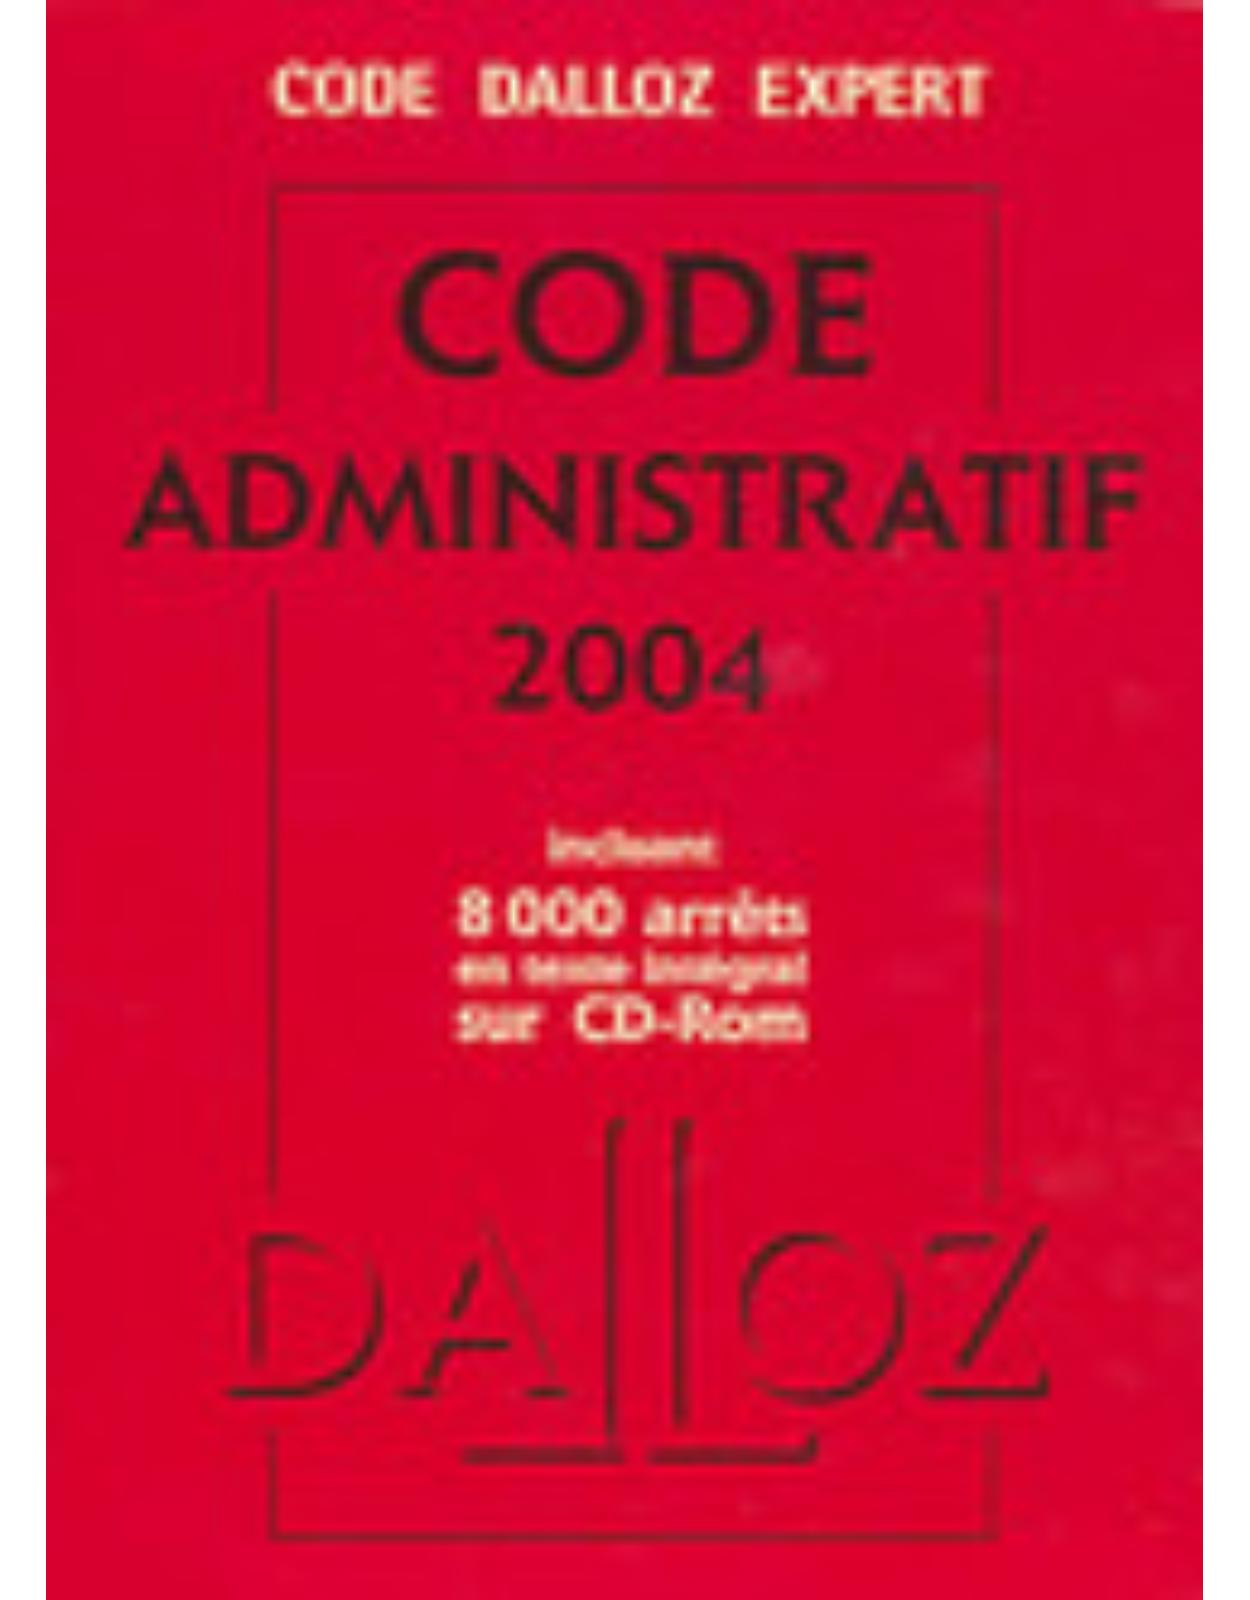 Code Dalloz Expert. Code administratif 2004(plus CD)